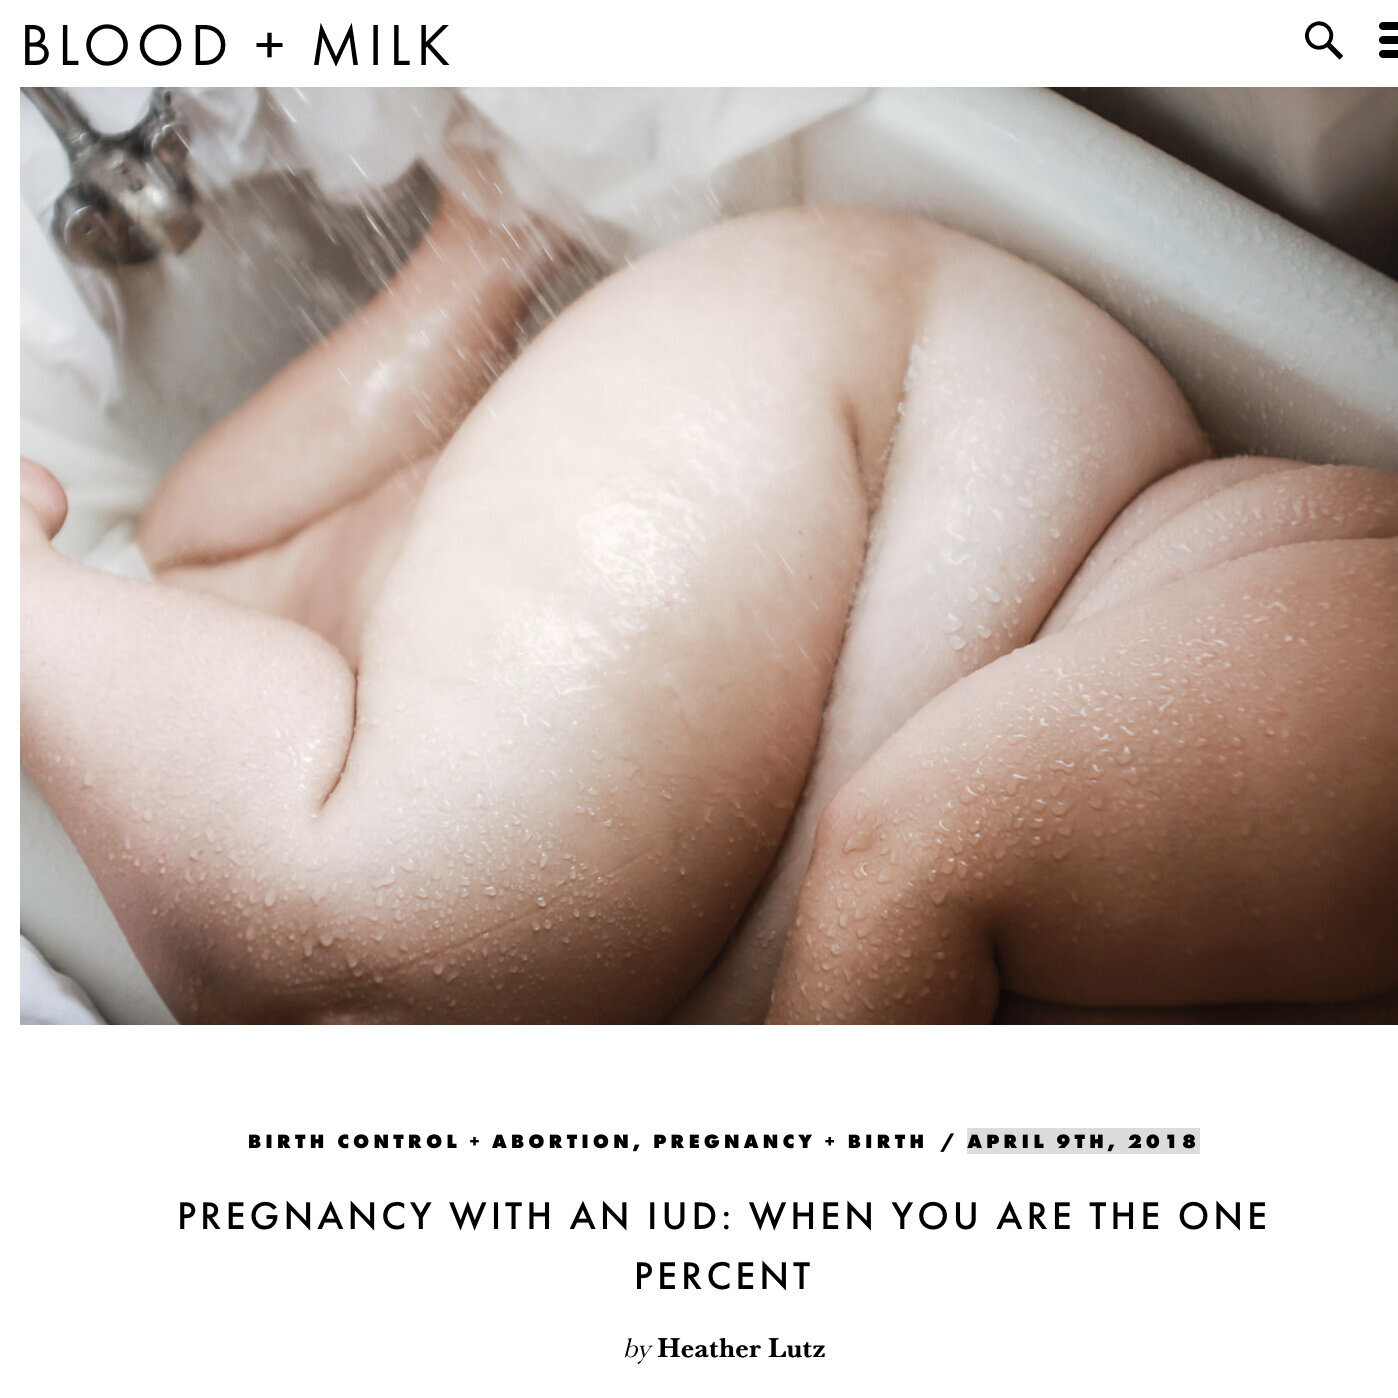 April 9th, 2018 - Blood + Milk